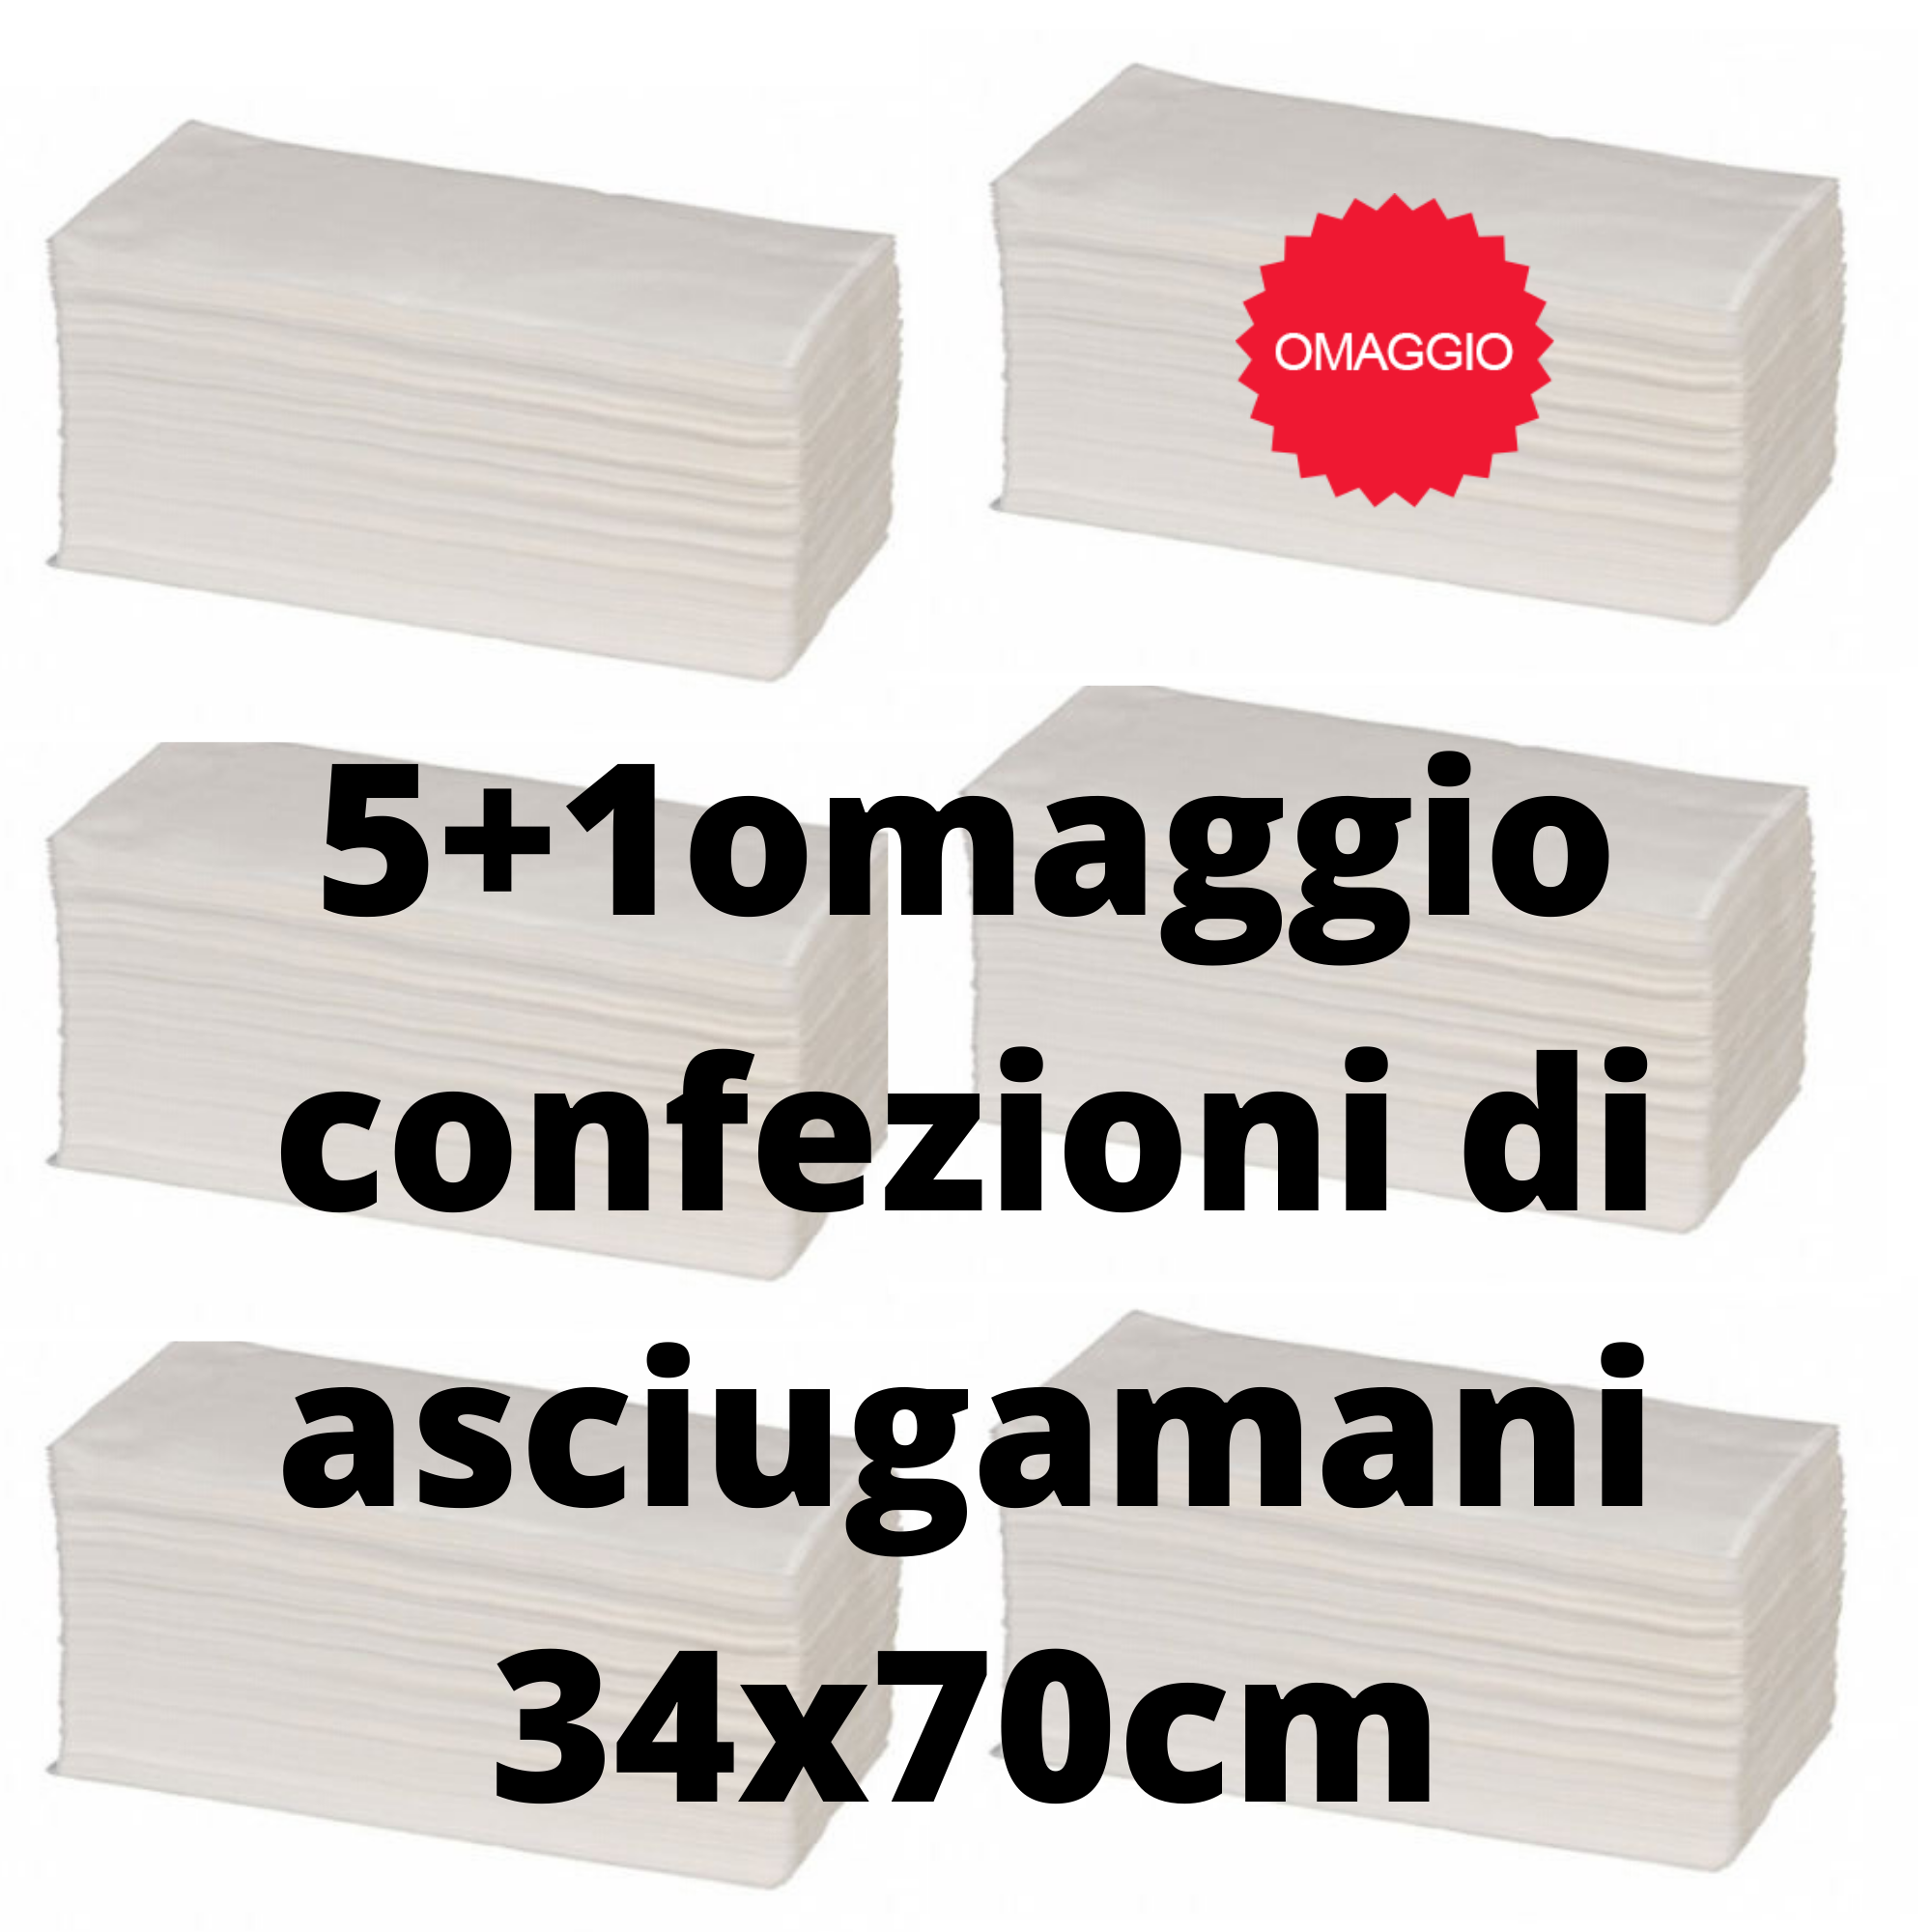 318 pz ASCIUGAMANO DI CARTA PIEGATO MONOUSO 5 STELLE 34 x 70 cm 5+1 Confezioni